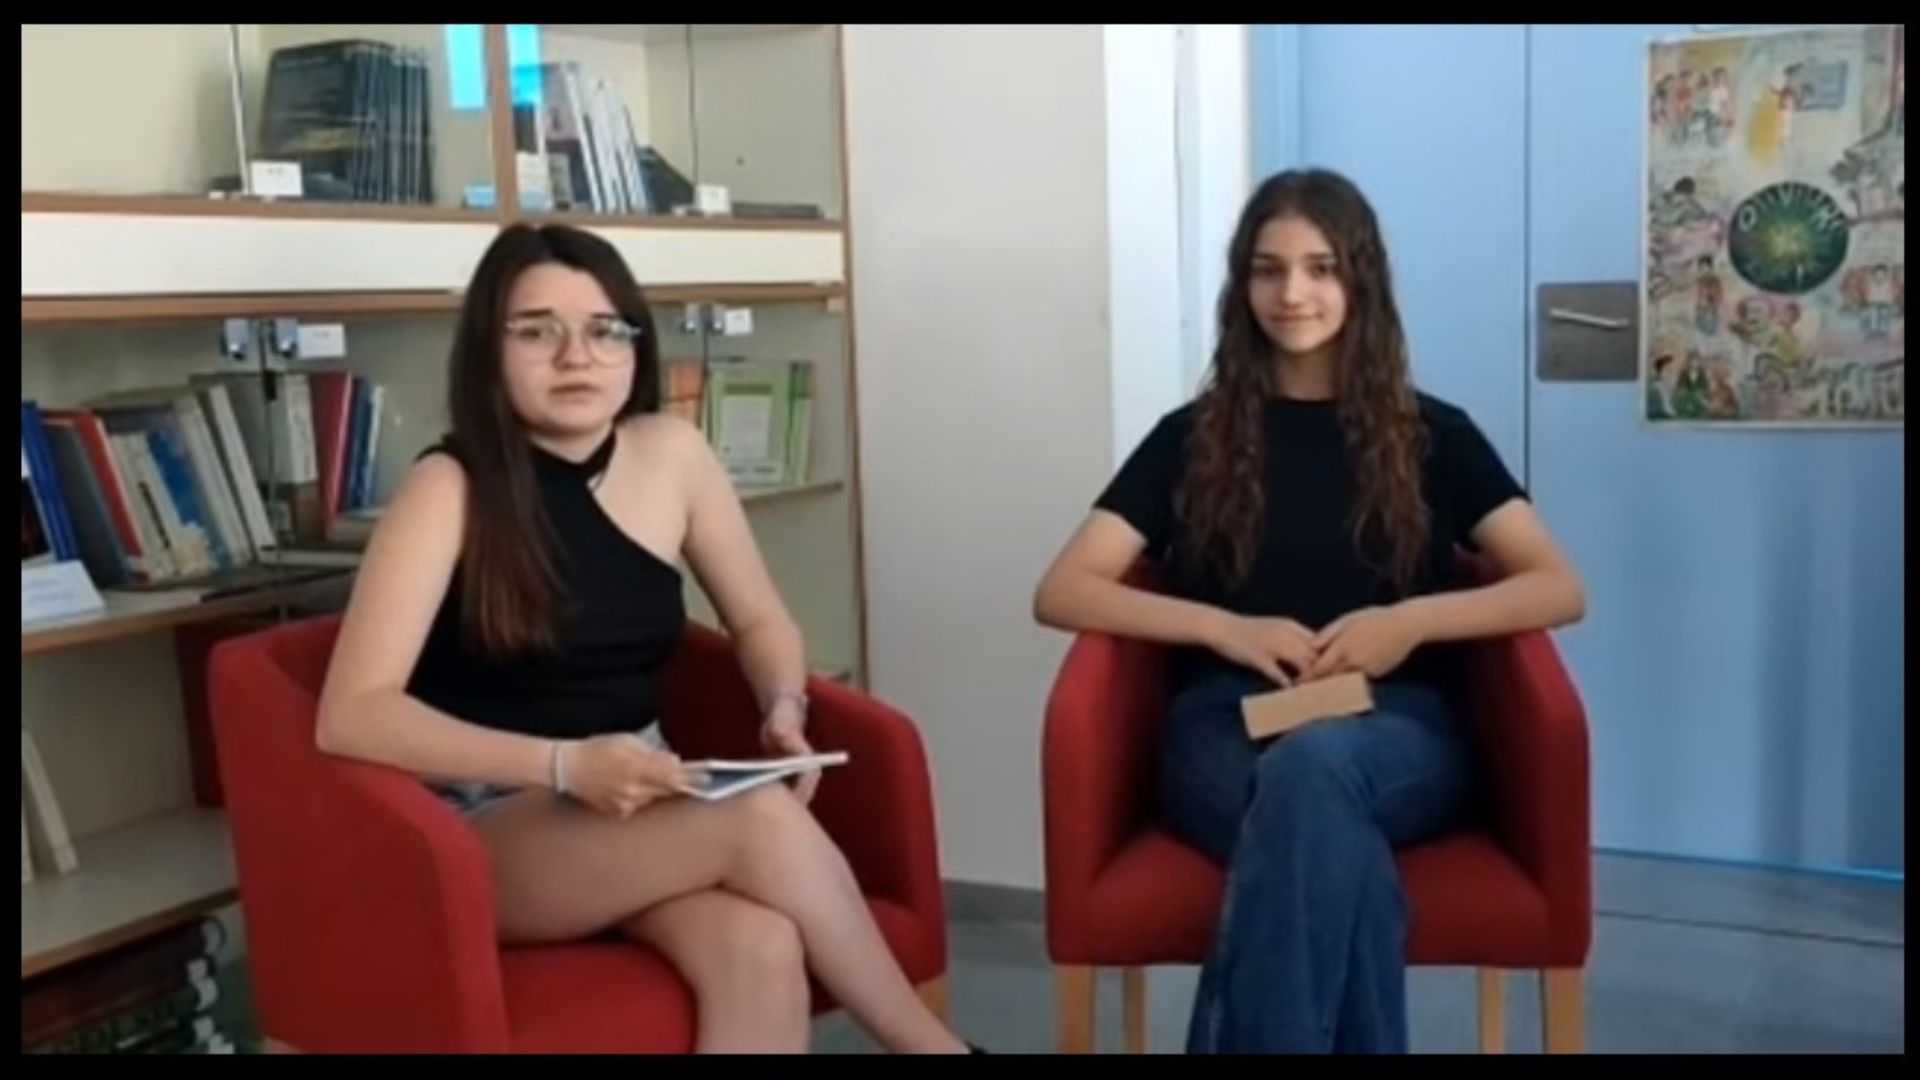 Dos estudiants del Jaume I guanyen el premi Sapiència per un projecte sobre malalties mentals El Periòdic d'Ontinyent - Noticies a Ontinyent